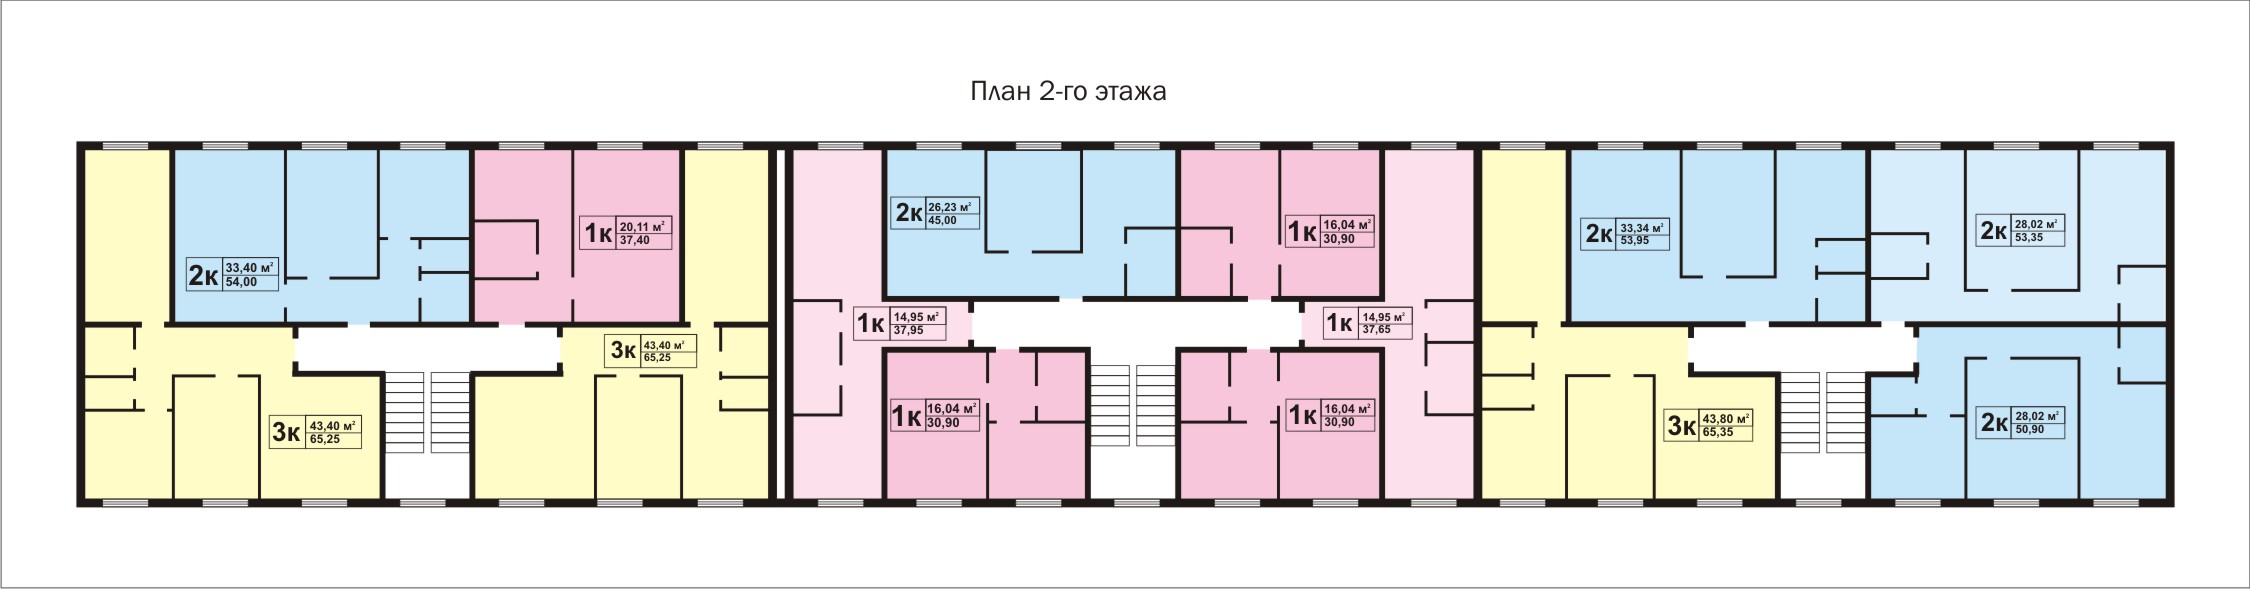 План 2-го этажа типового дома